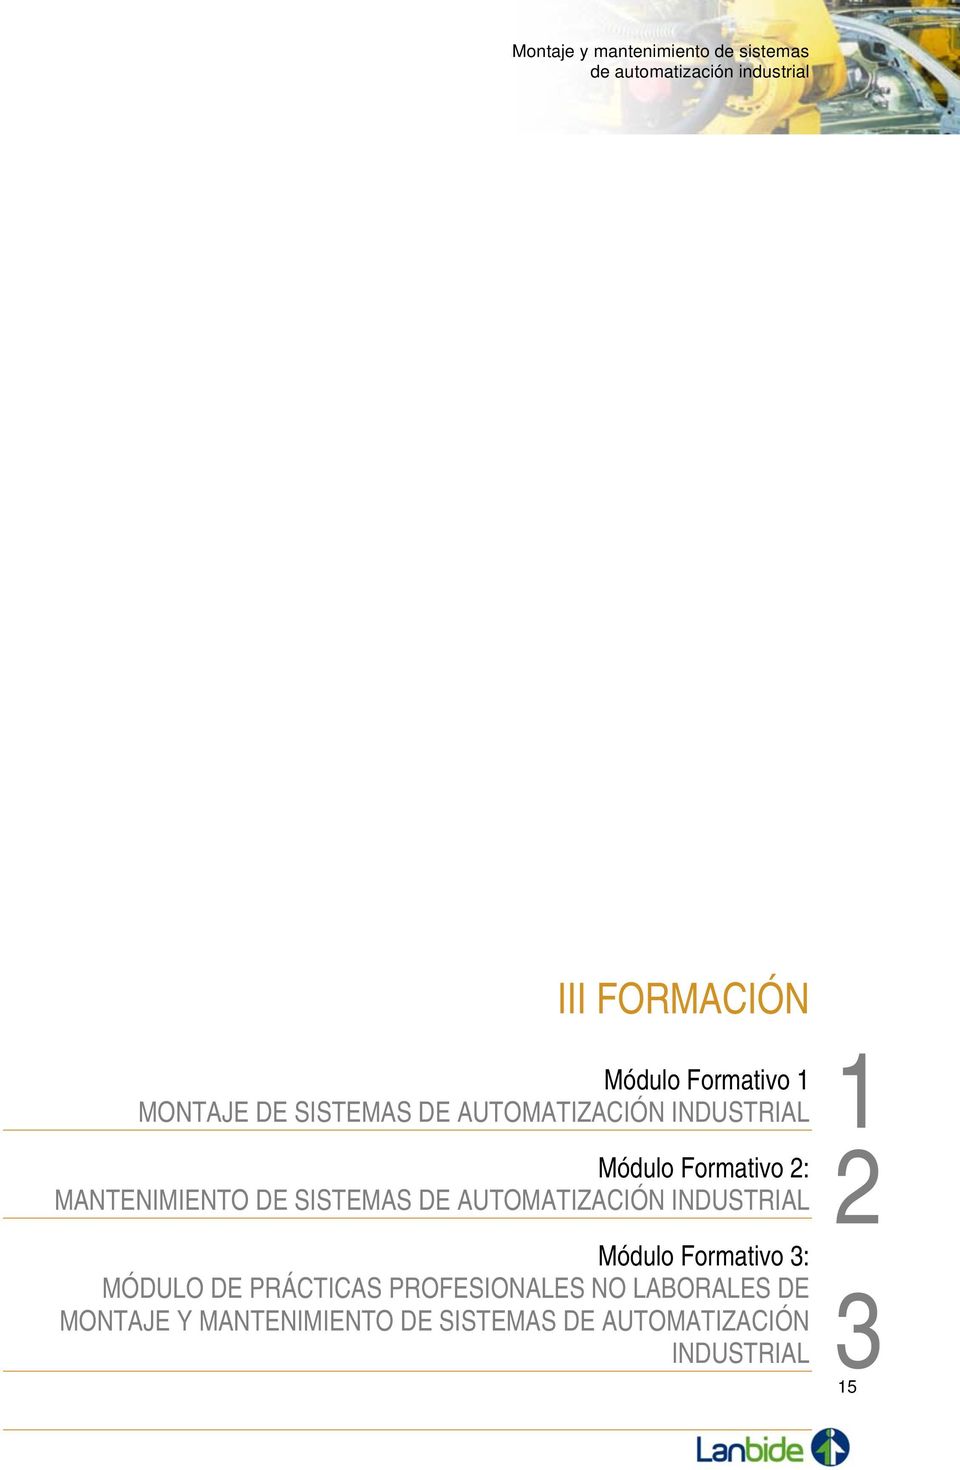 MANTENIMIENTO DE SISTEMAS DE AUTOMATIZACIÓN INDUSTRIAL Módulo Formativo 3: MÓDULO DE